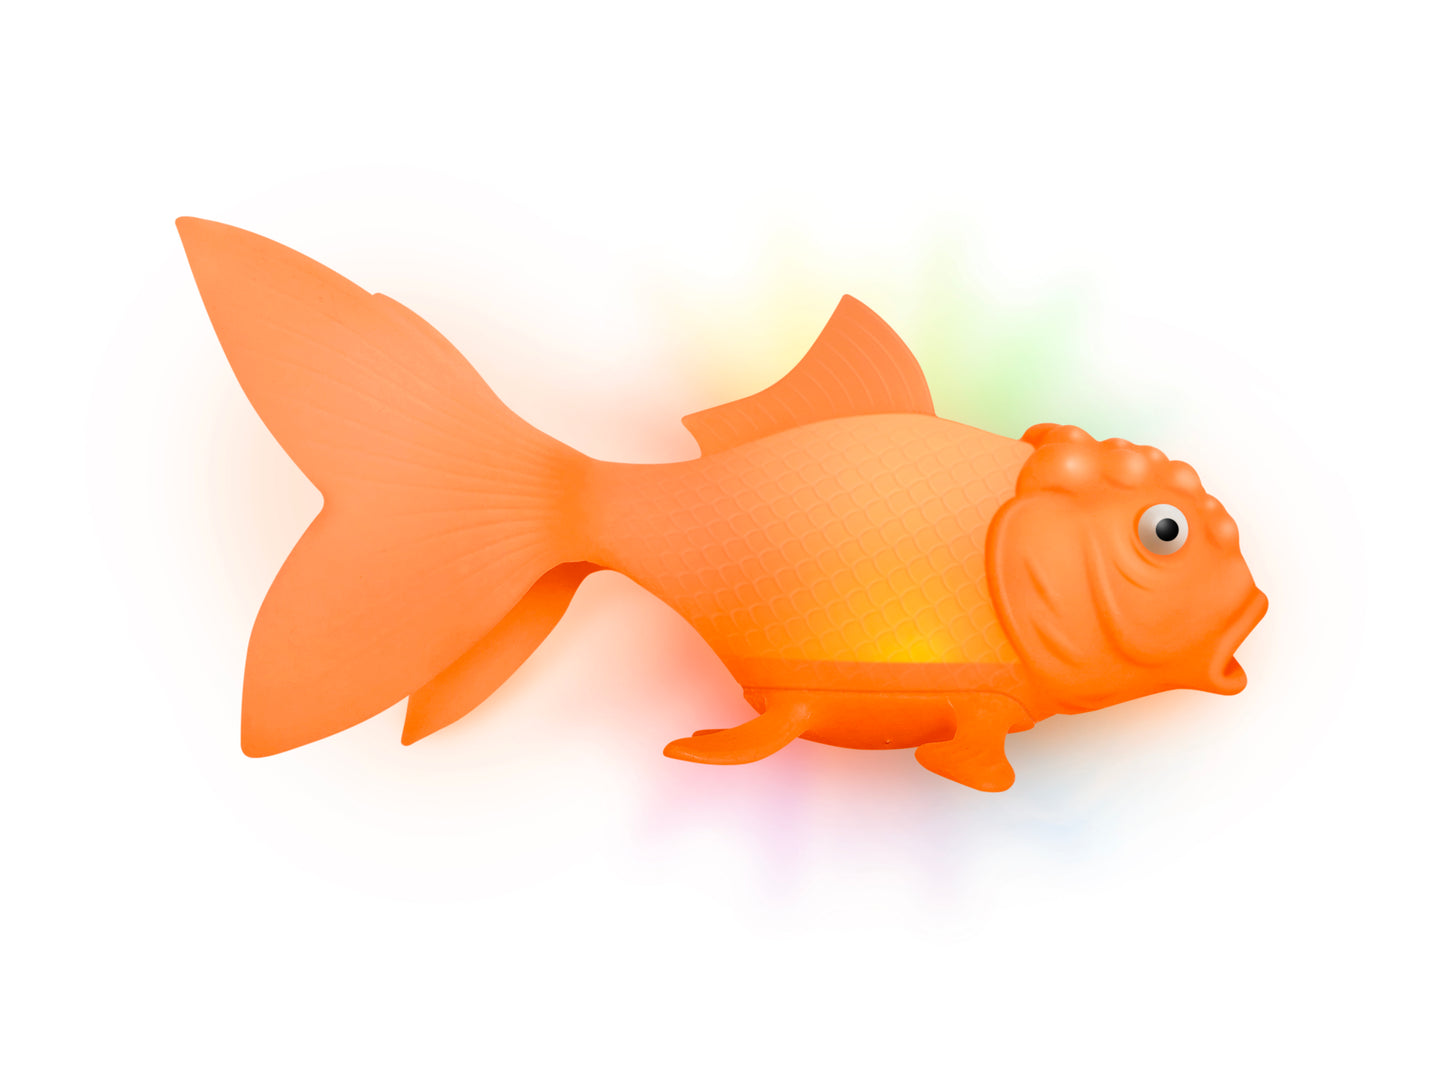 Leuchtender Fisch | Koi Toy